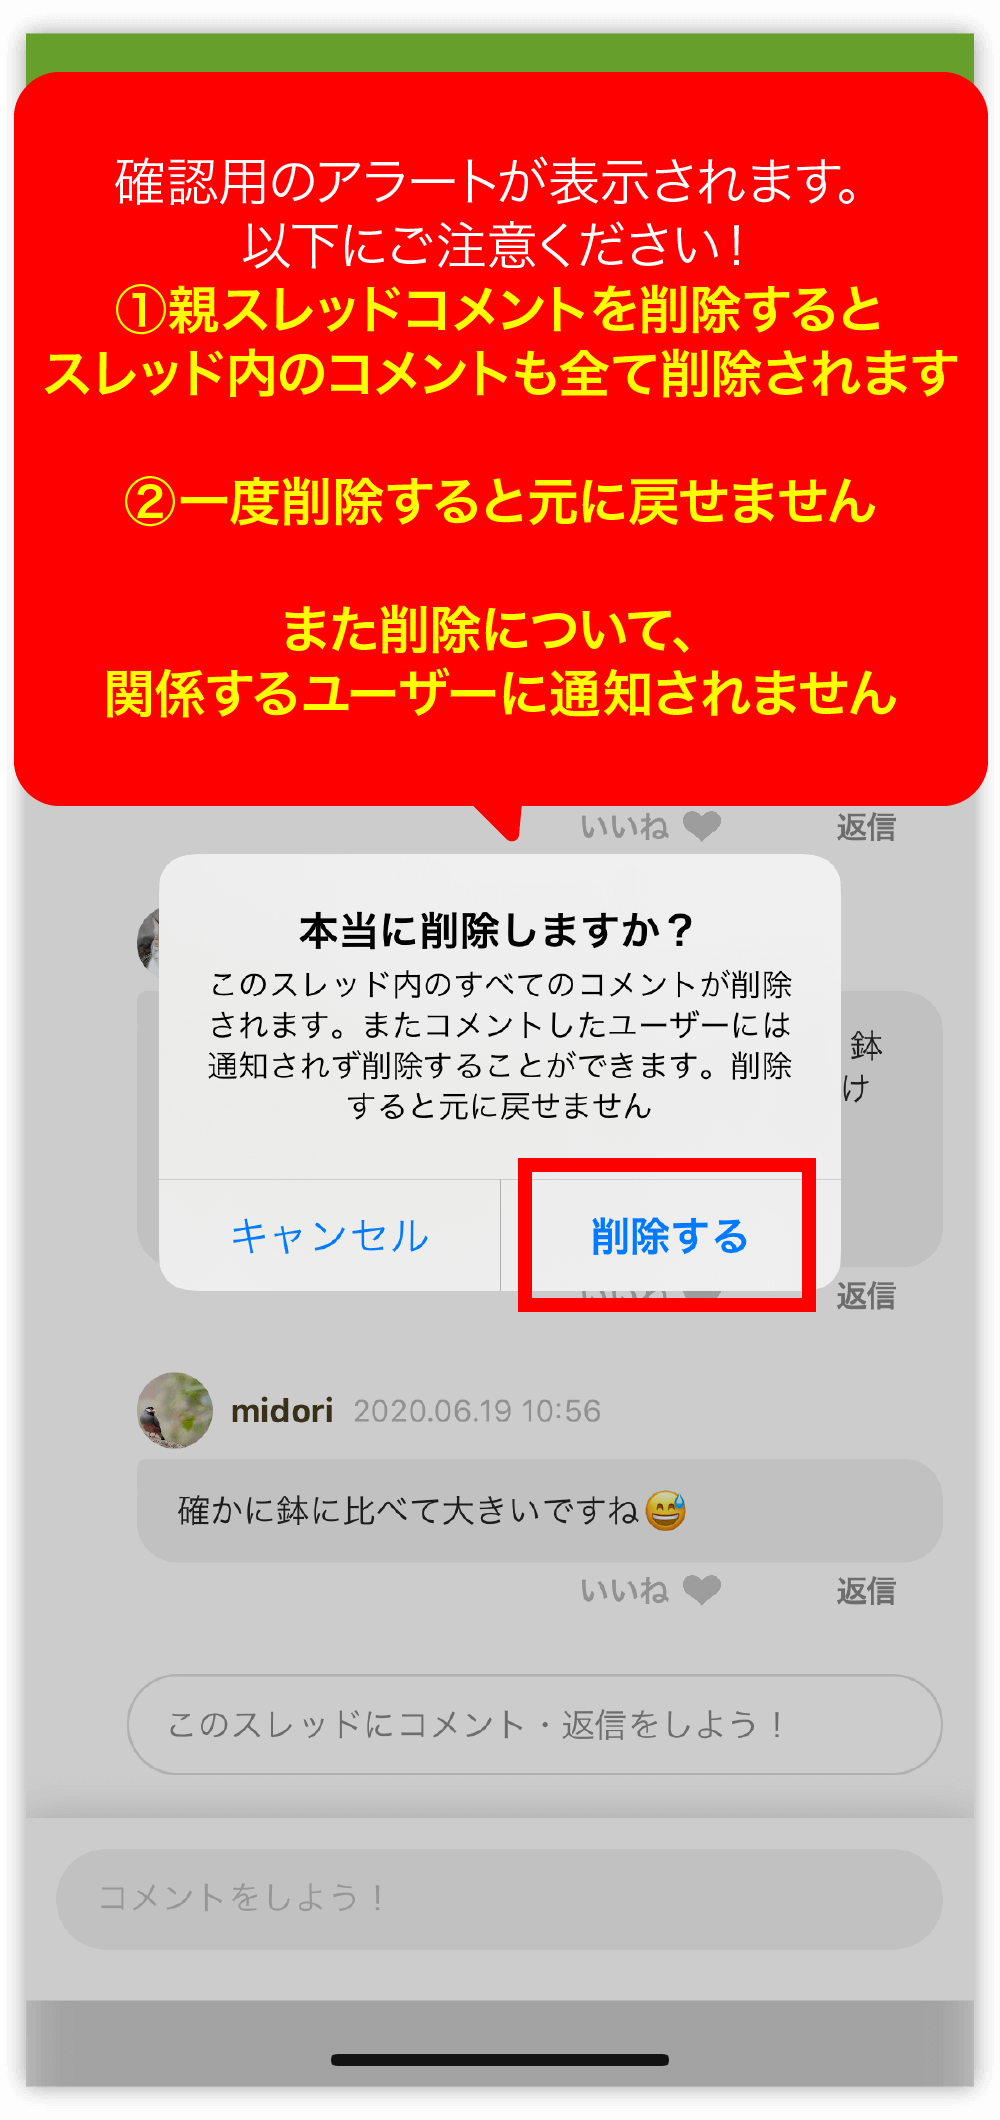 ✨ NEW ✨ [iOS2.19.0以降/Android2.16.0以降]コメントの編集